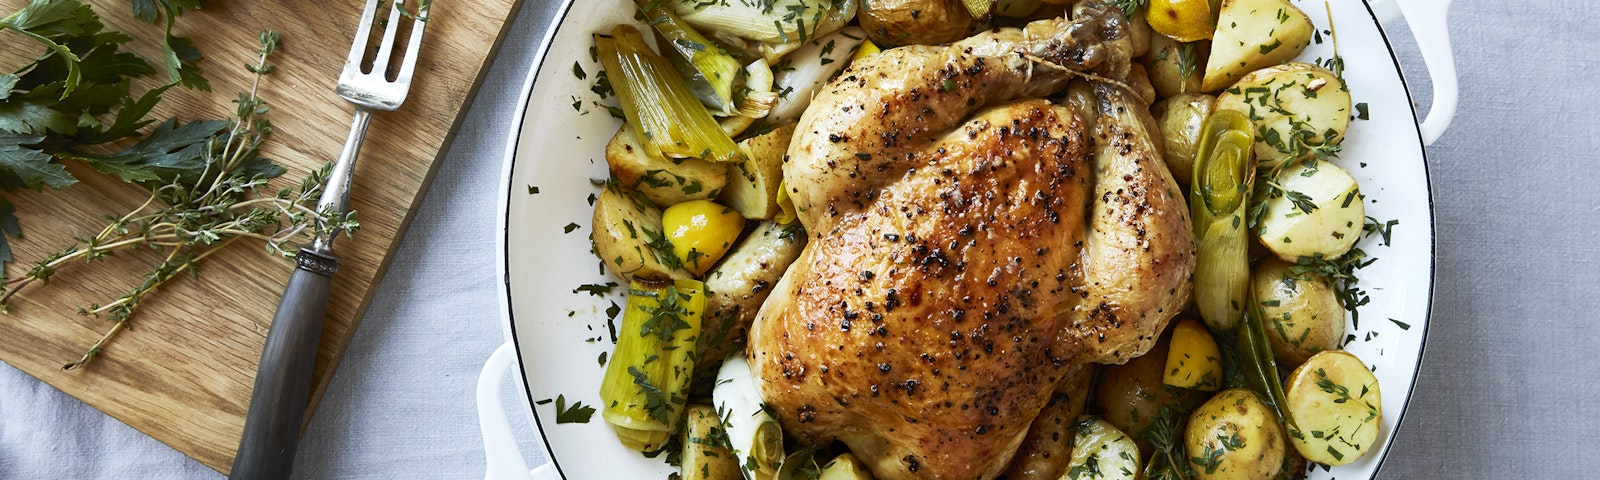 Ovnbagt kylling med kartofler, porrer & citron